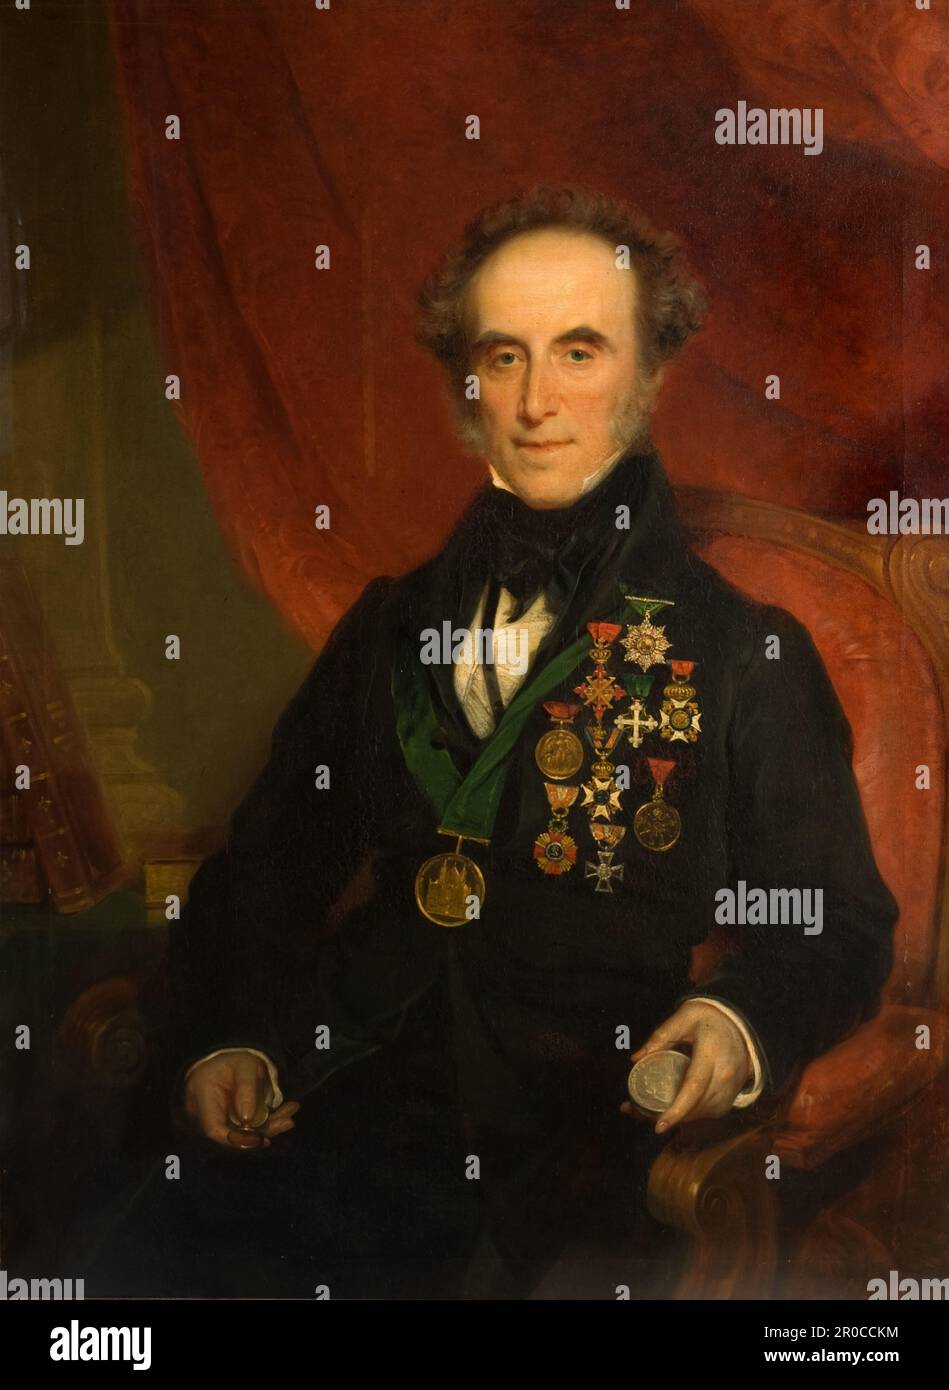 Ritratto di Sir Edward Thomason (1769-1849), 1849. Di Samuel Colman Foto Stock